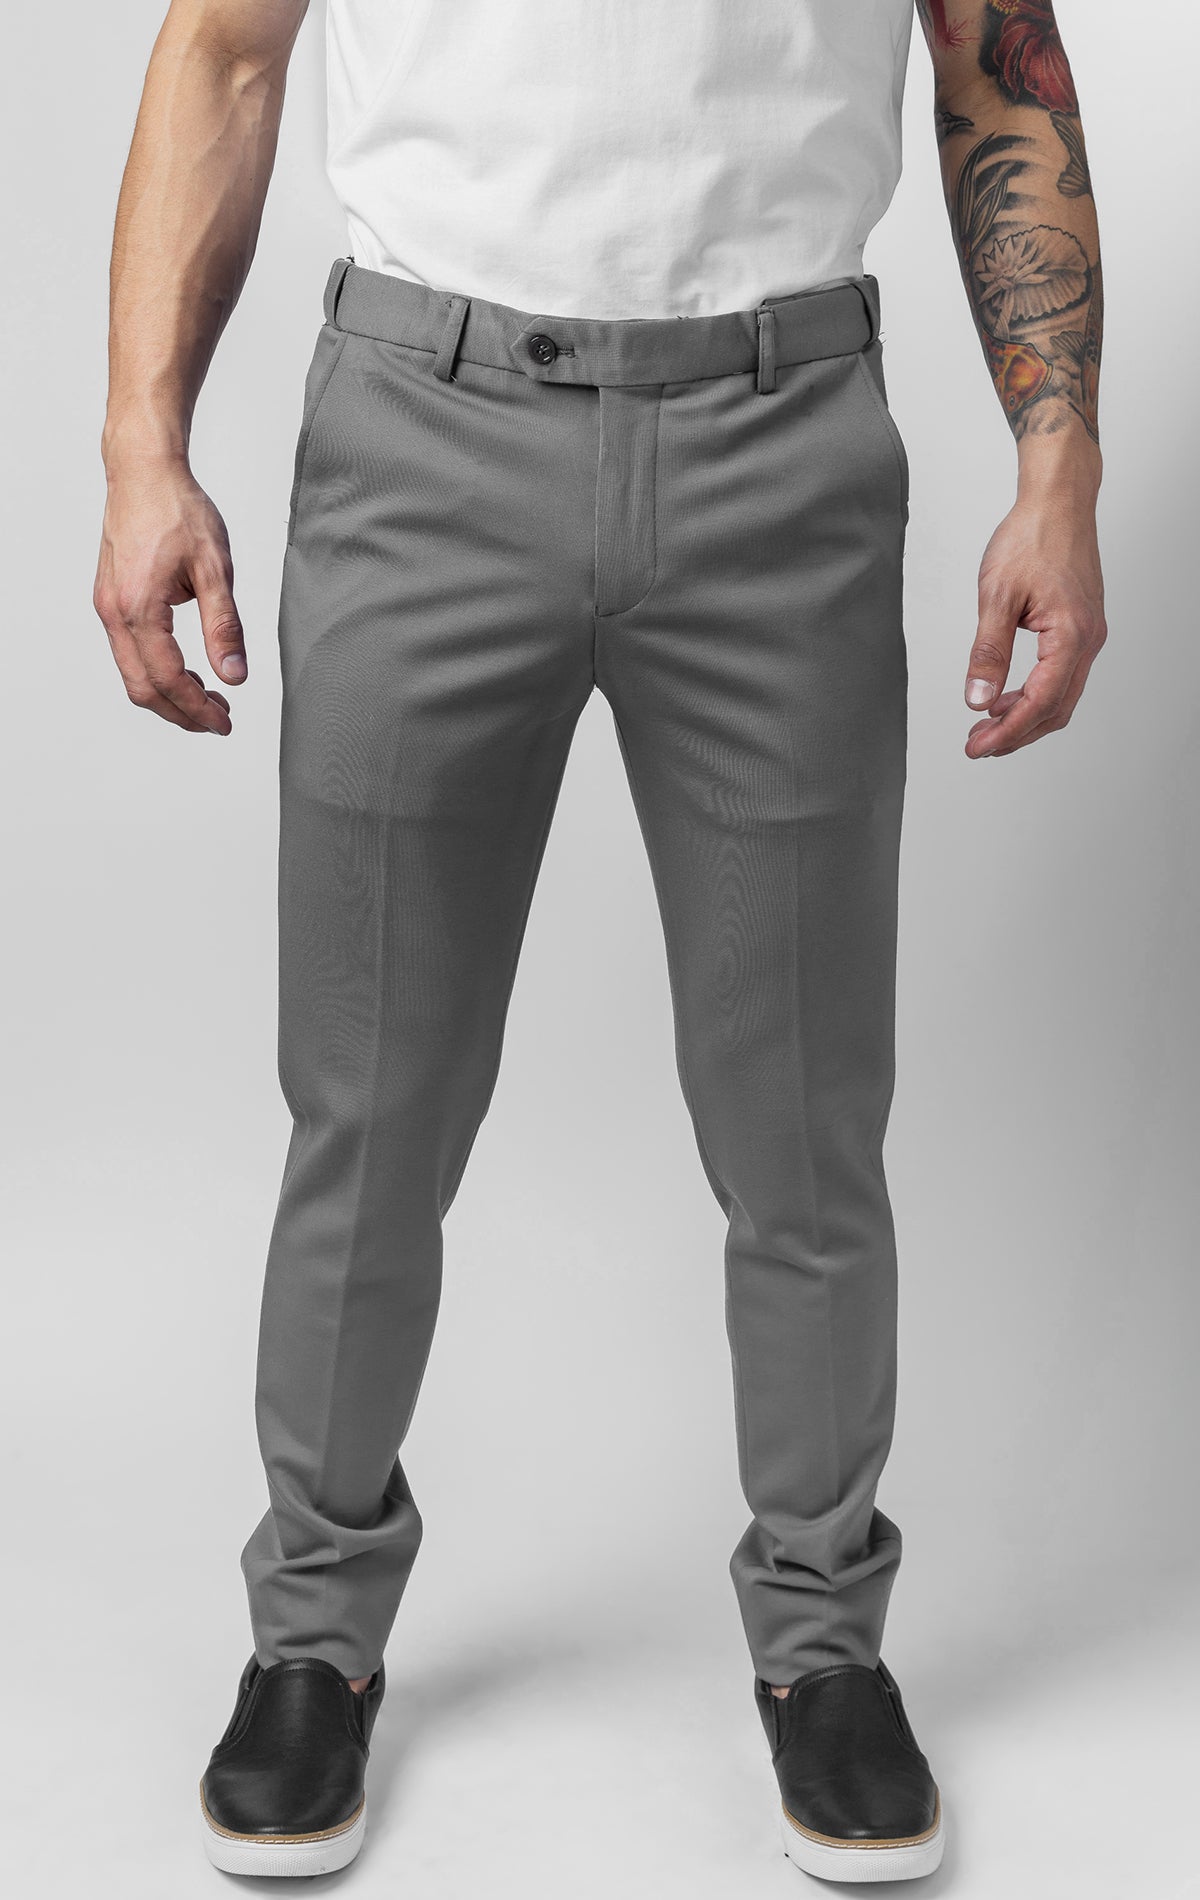 Grey casual/formal pants for men